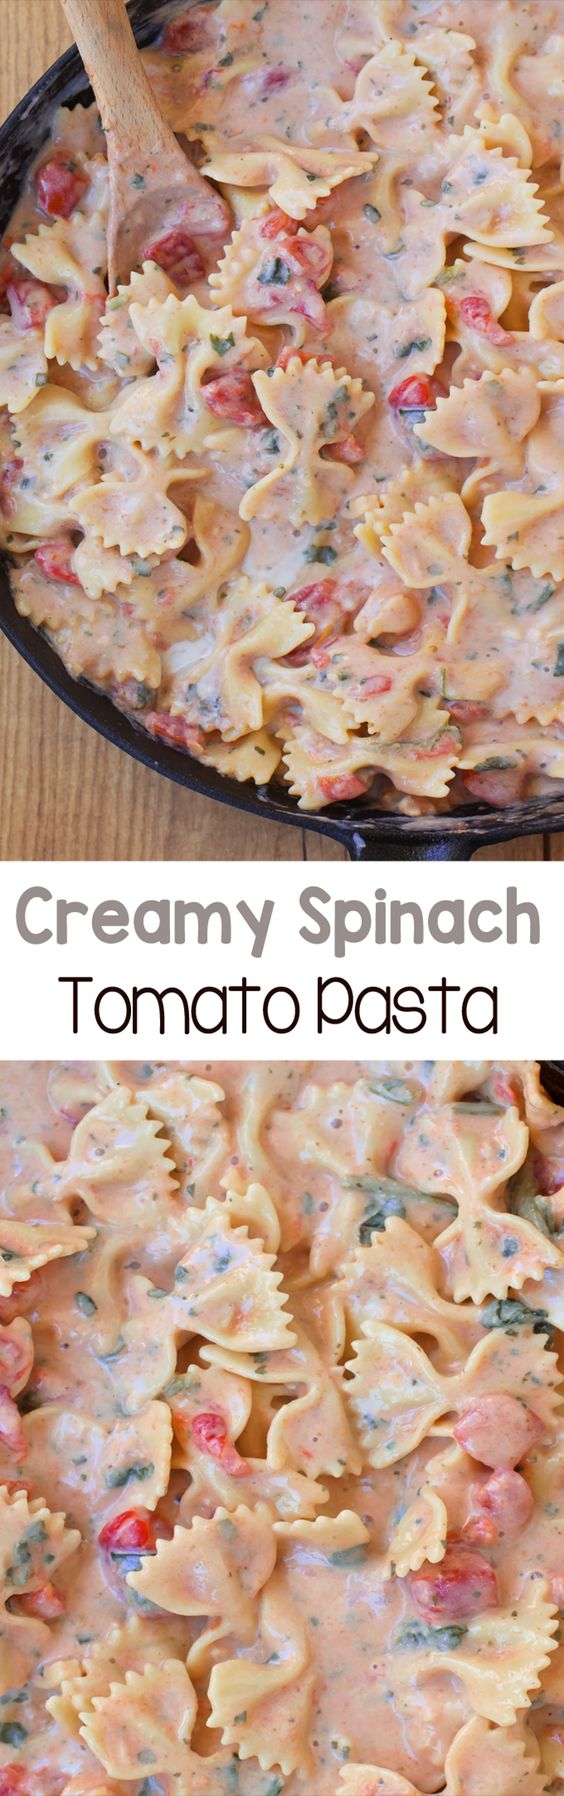 Creamy-Spinach-Tomato-Pasta